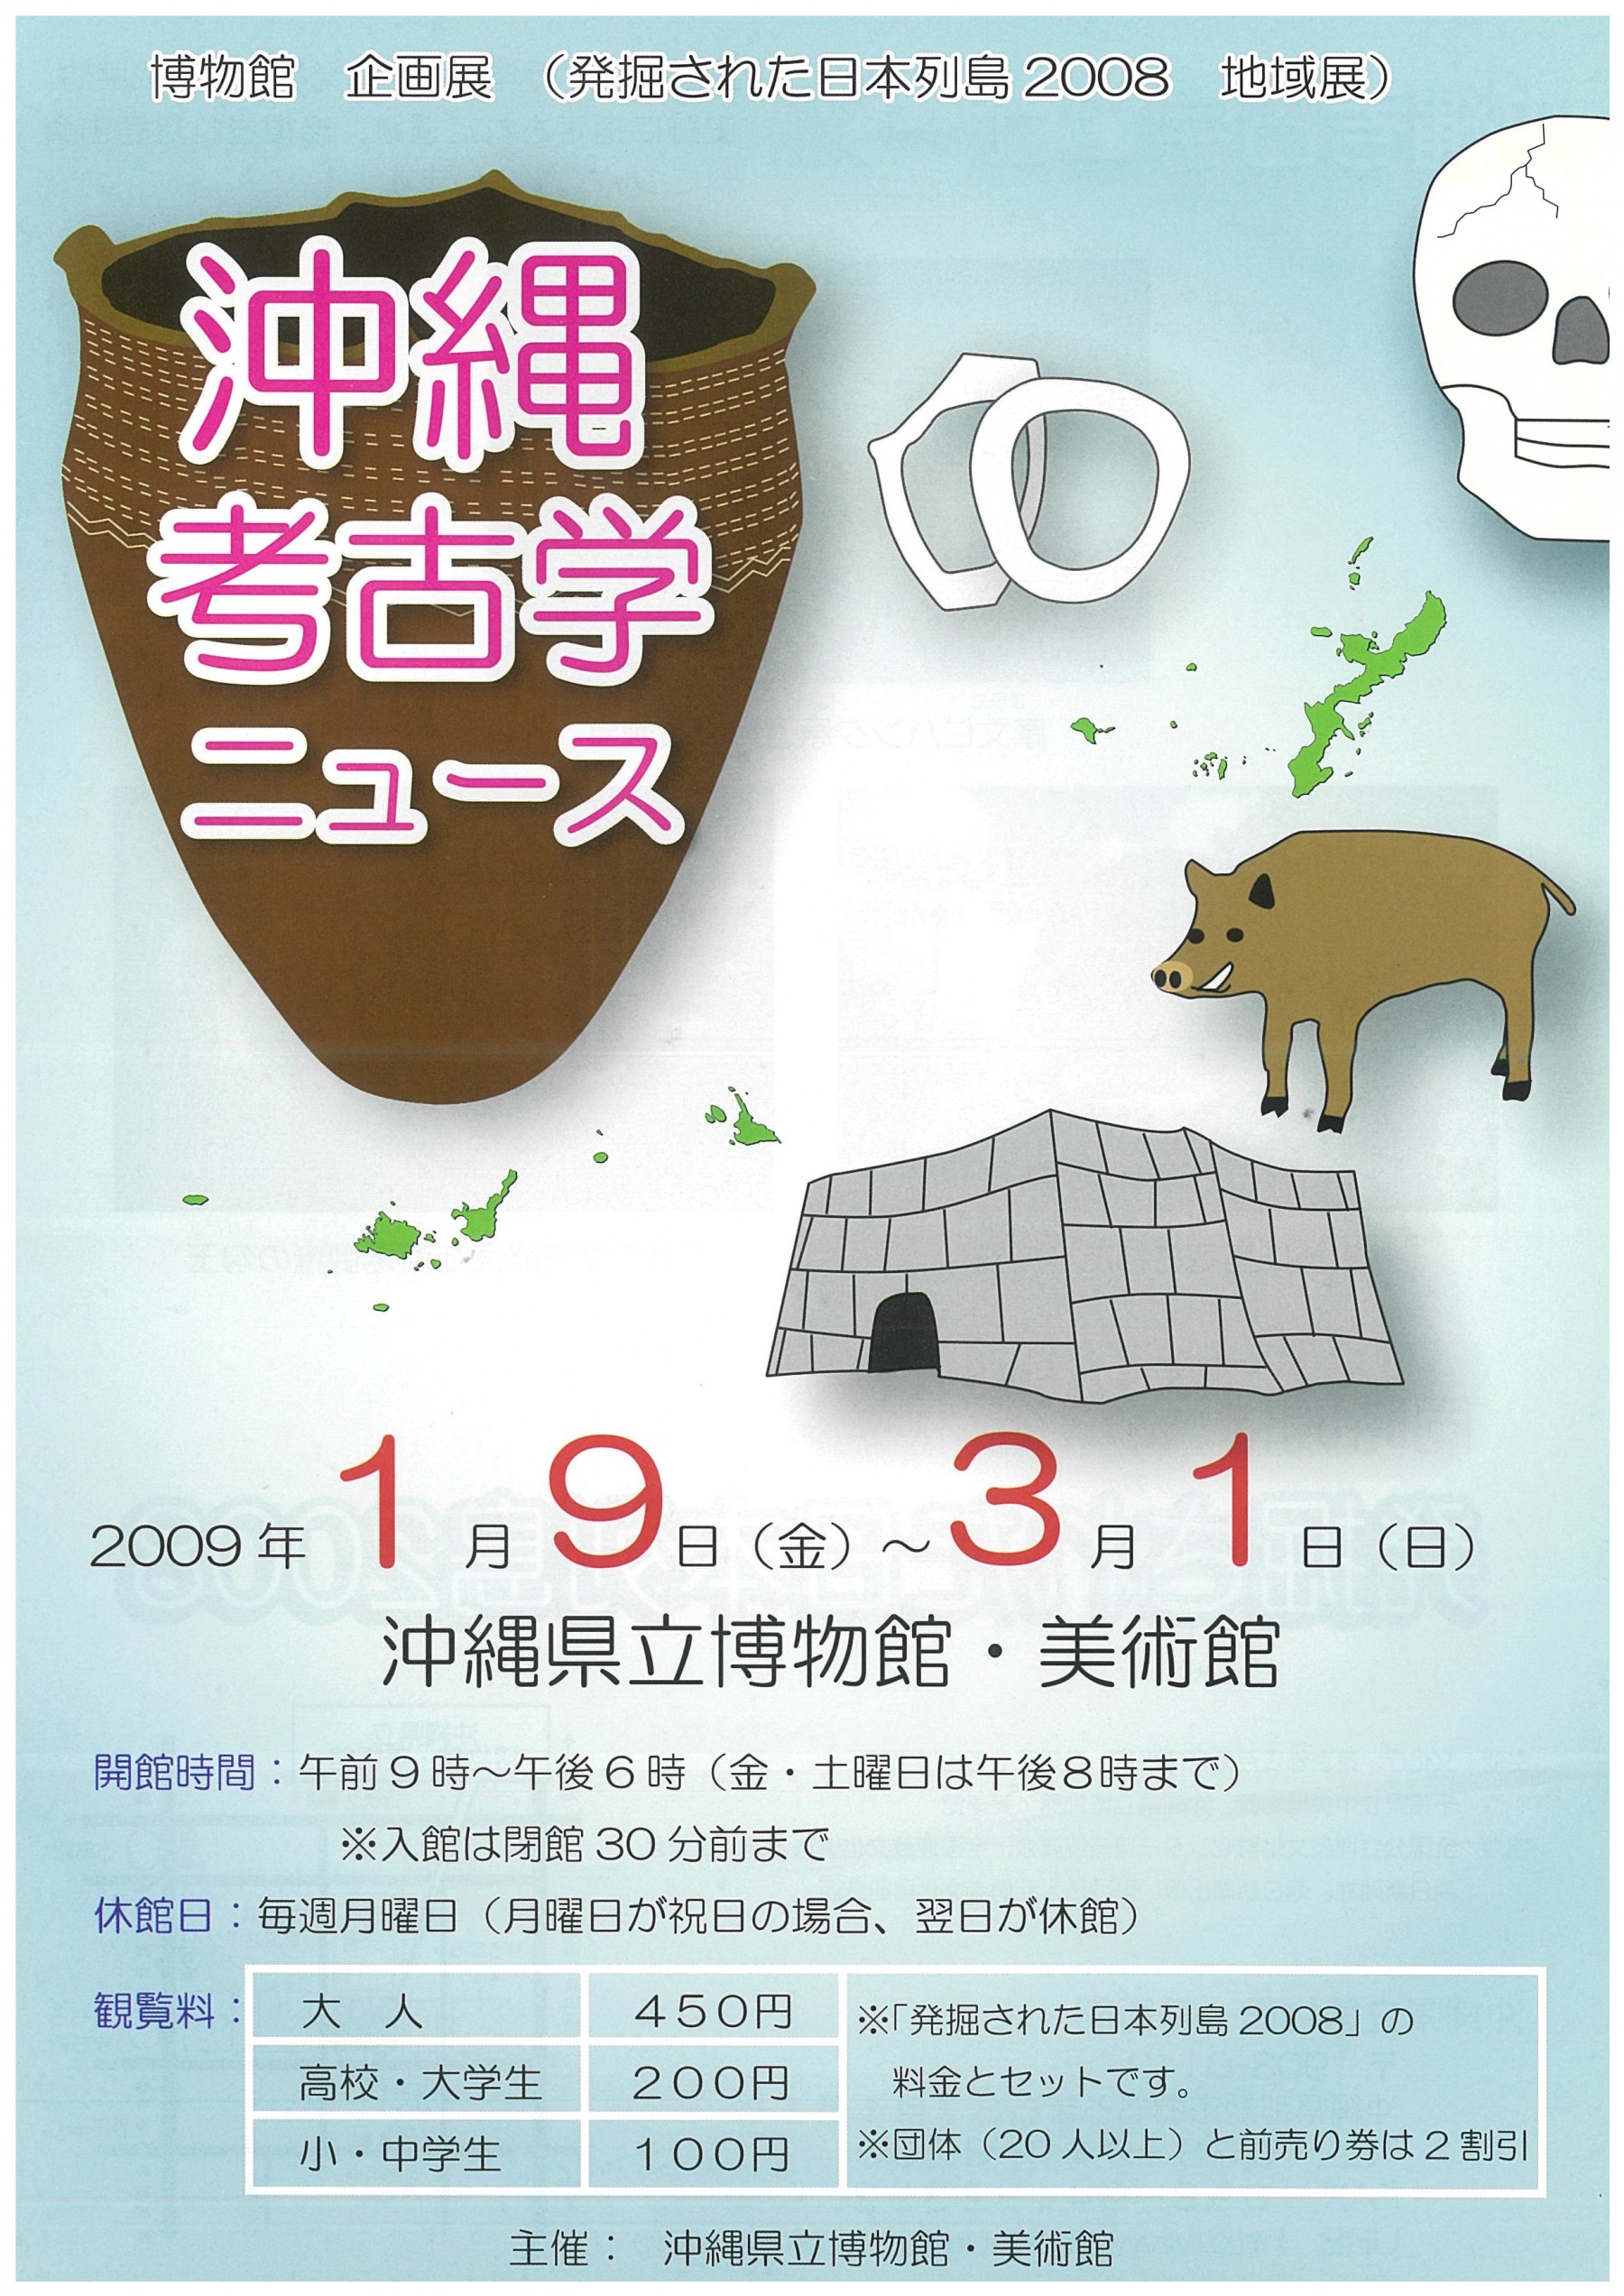 企画展「発掘された日本列島2008」「沖縄考古学ニュース」 